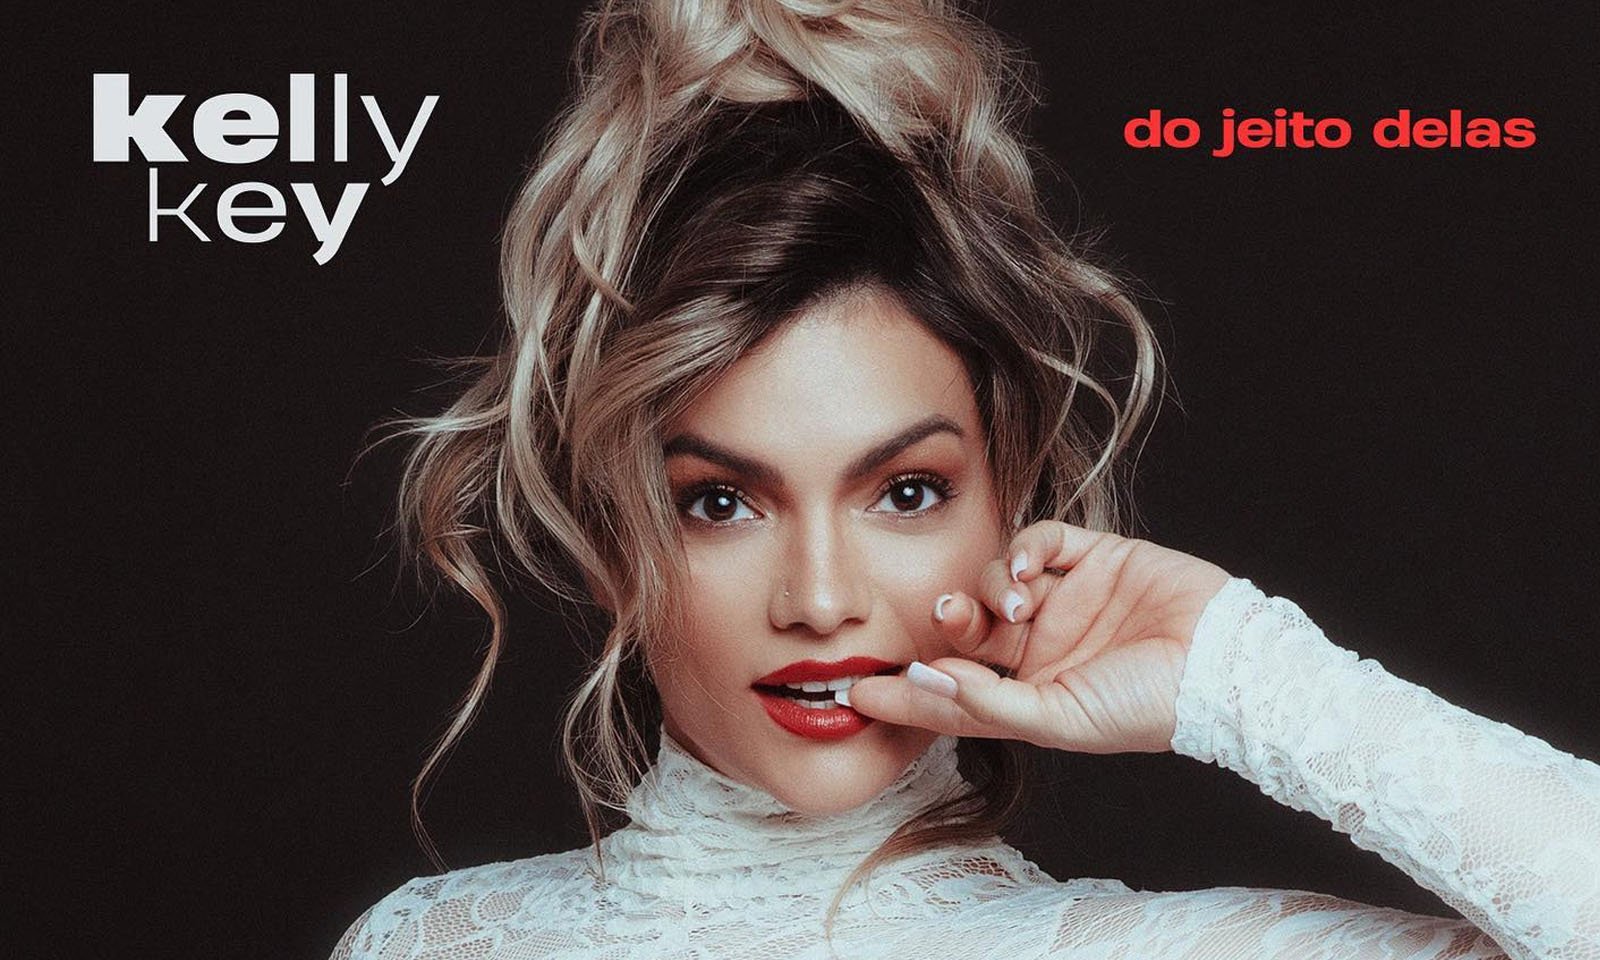 Kelly Key divulga álbum inédito com participação de Luísa Sonza, Mc Rebecca e Gabi Martins